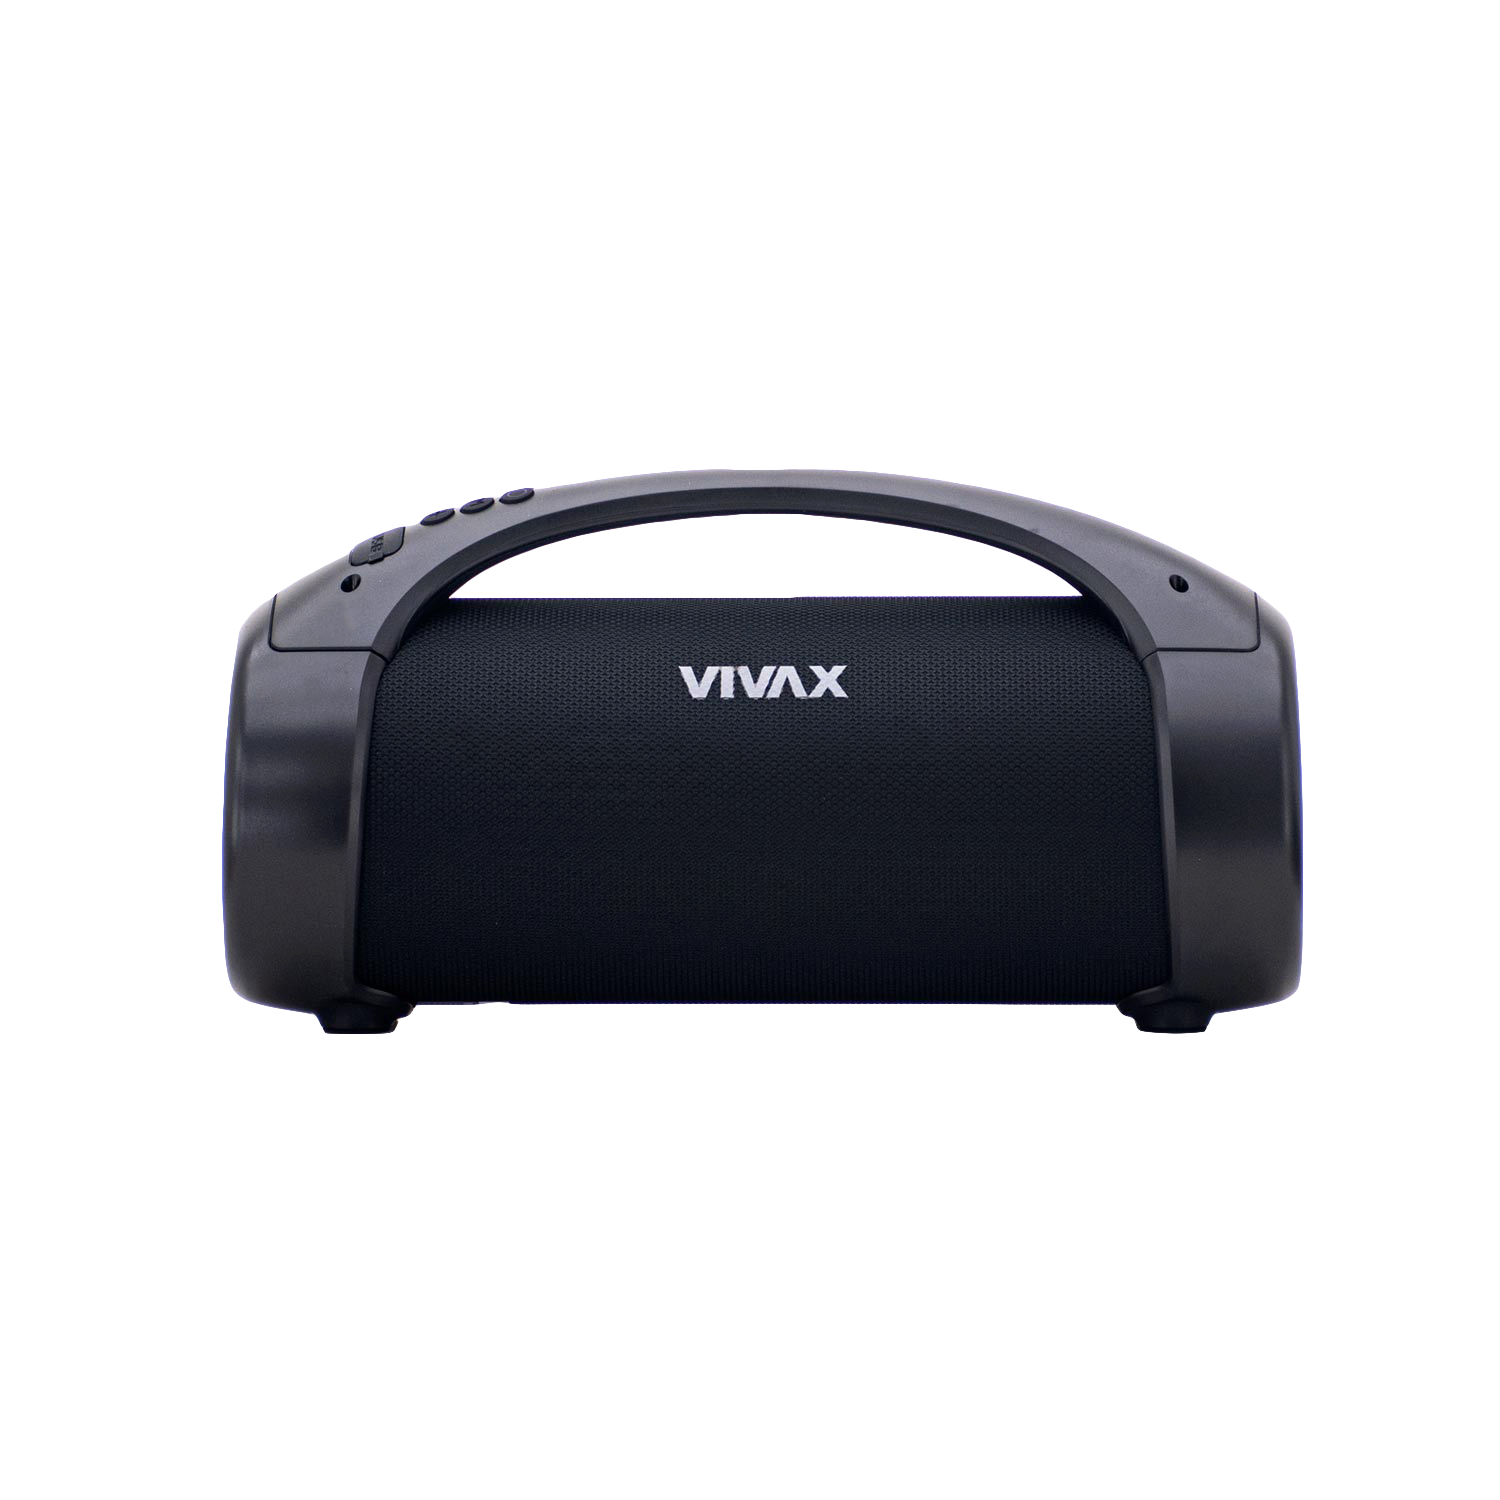 Boxa portabila Vivax BS-210, Bluetooth, USB, FM, 50W, 3600 mAh, IPX5, microfon incorporat, negru